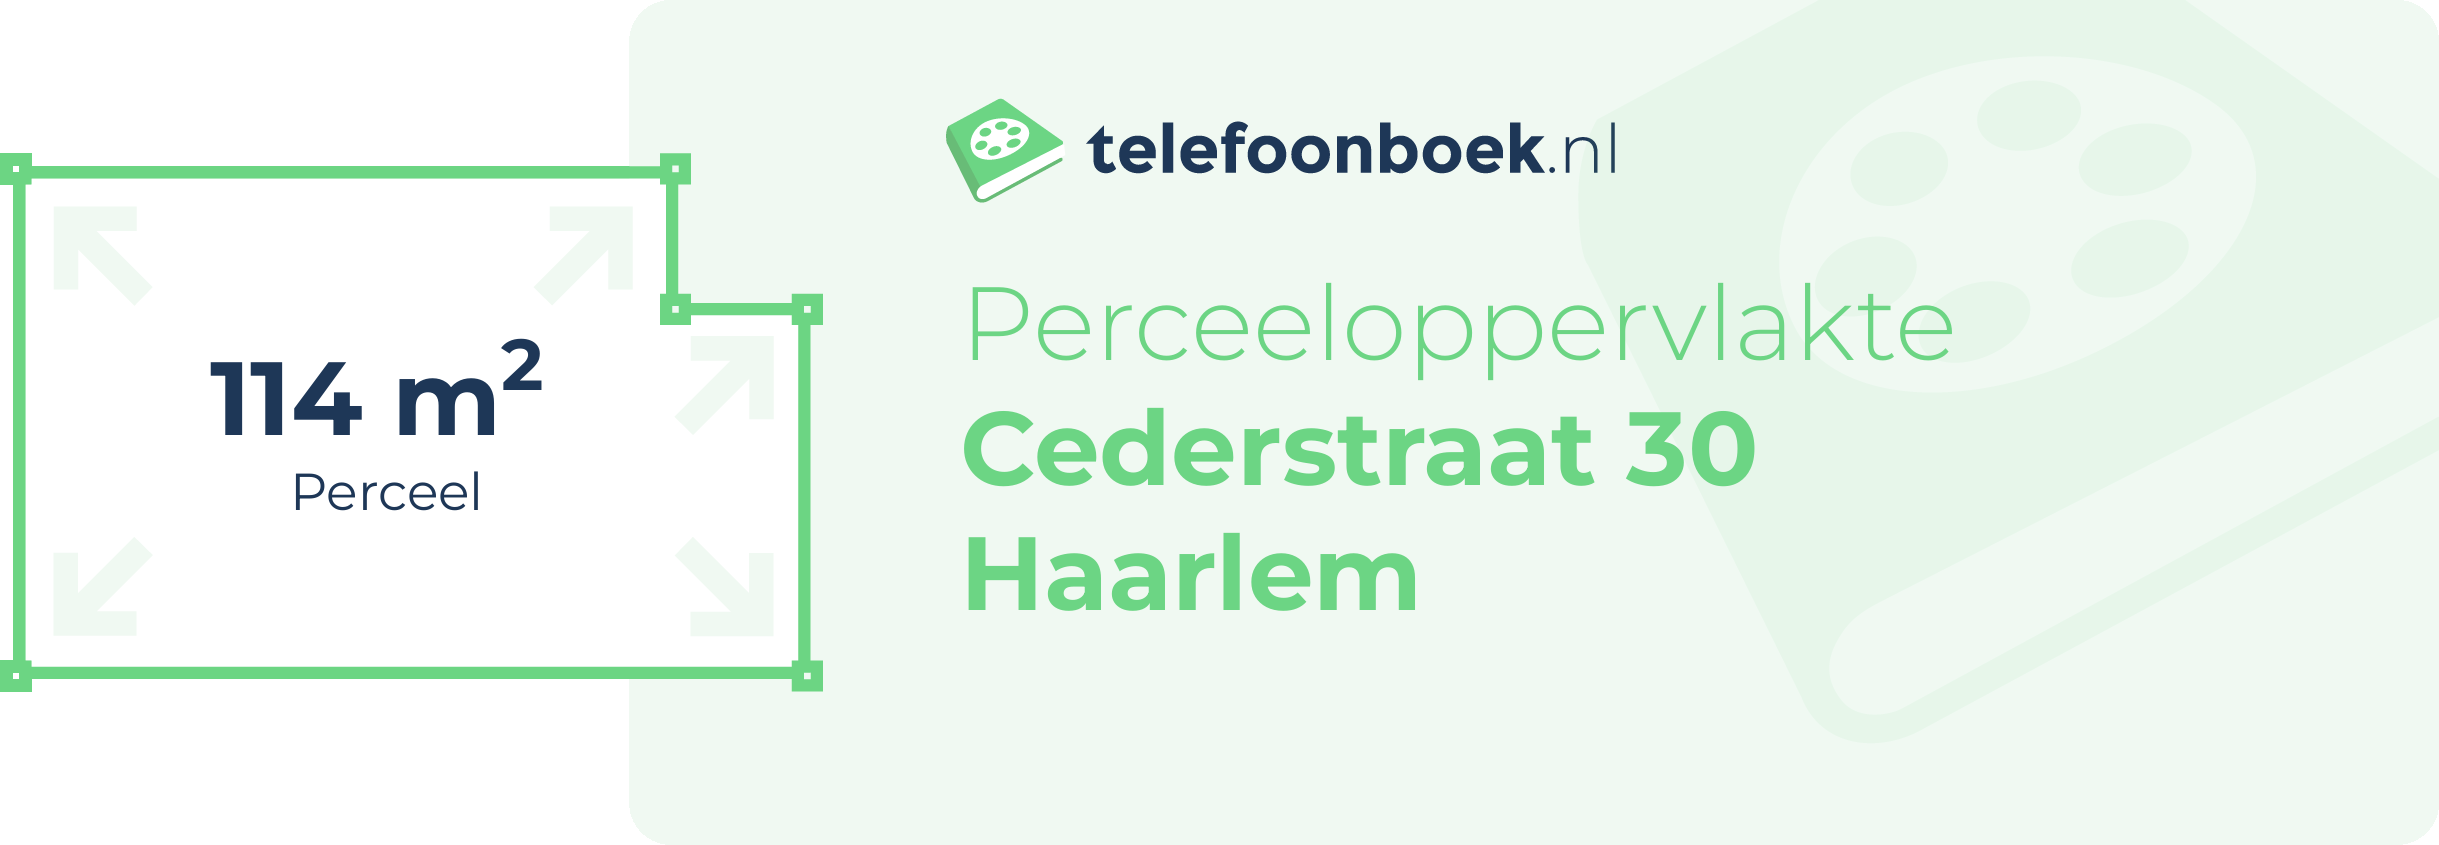 Perceeloppervlakte Cederstraat 30 Haarlem